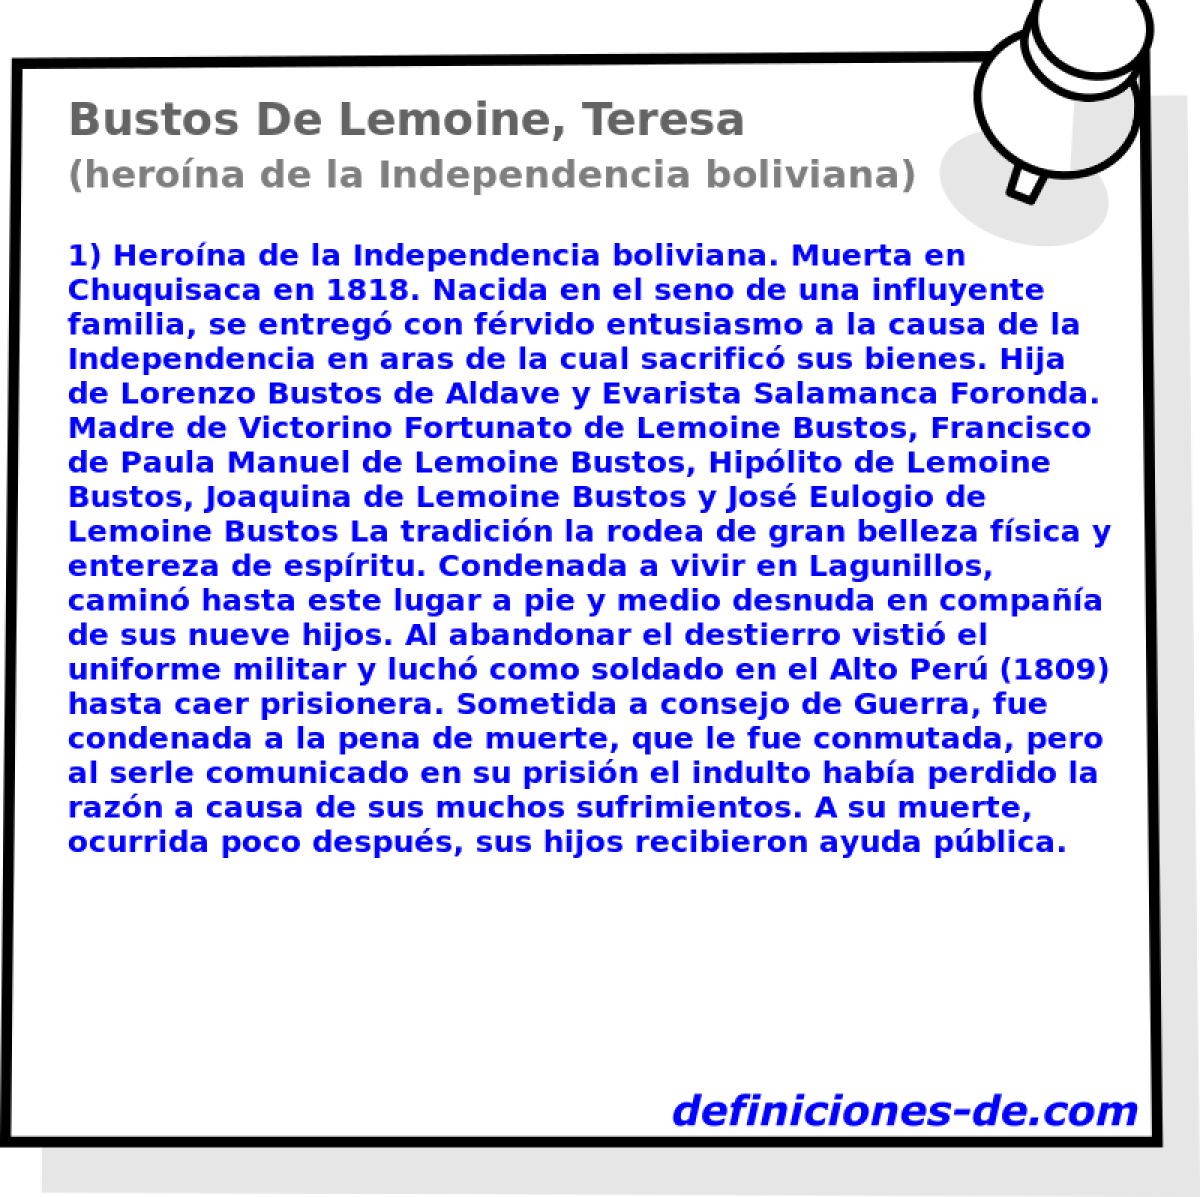 Bustos De Lemoine, Teresa (herona de la Independencia boliviana)